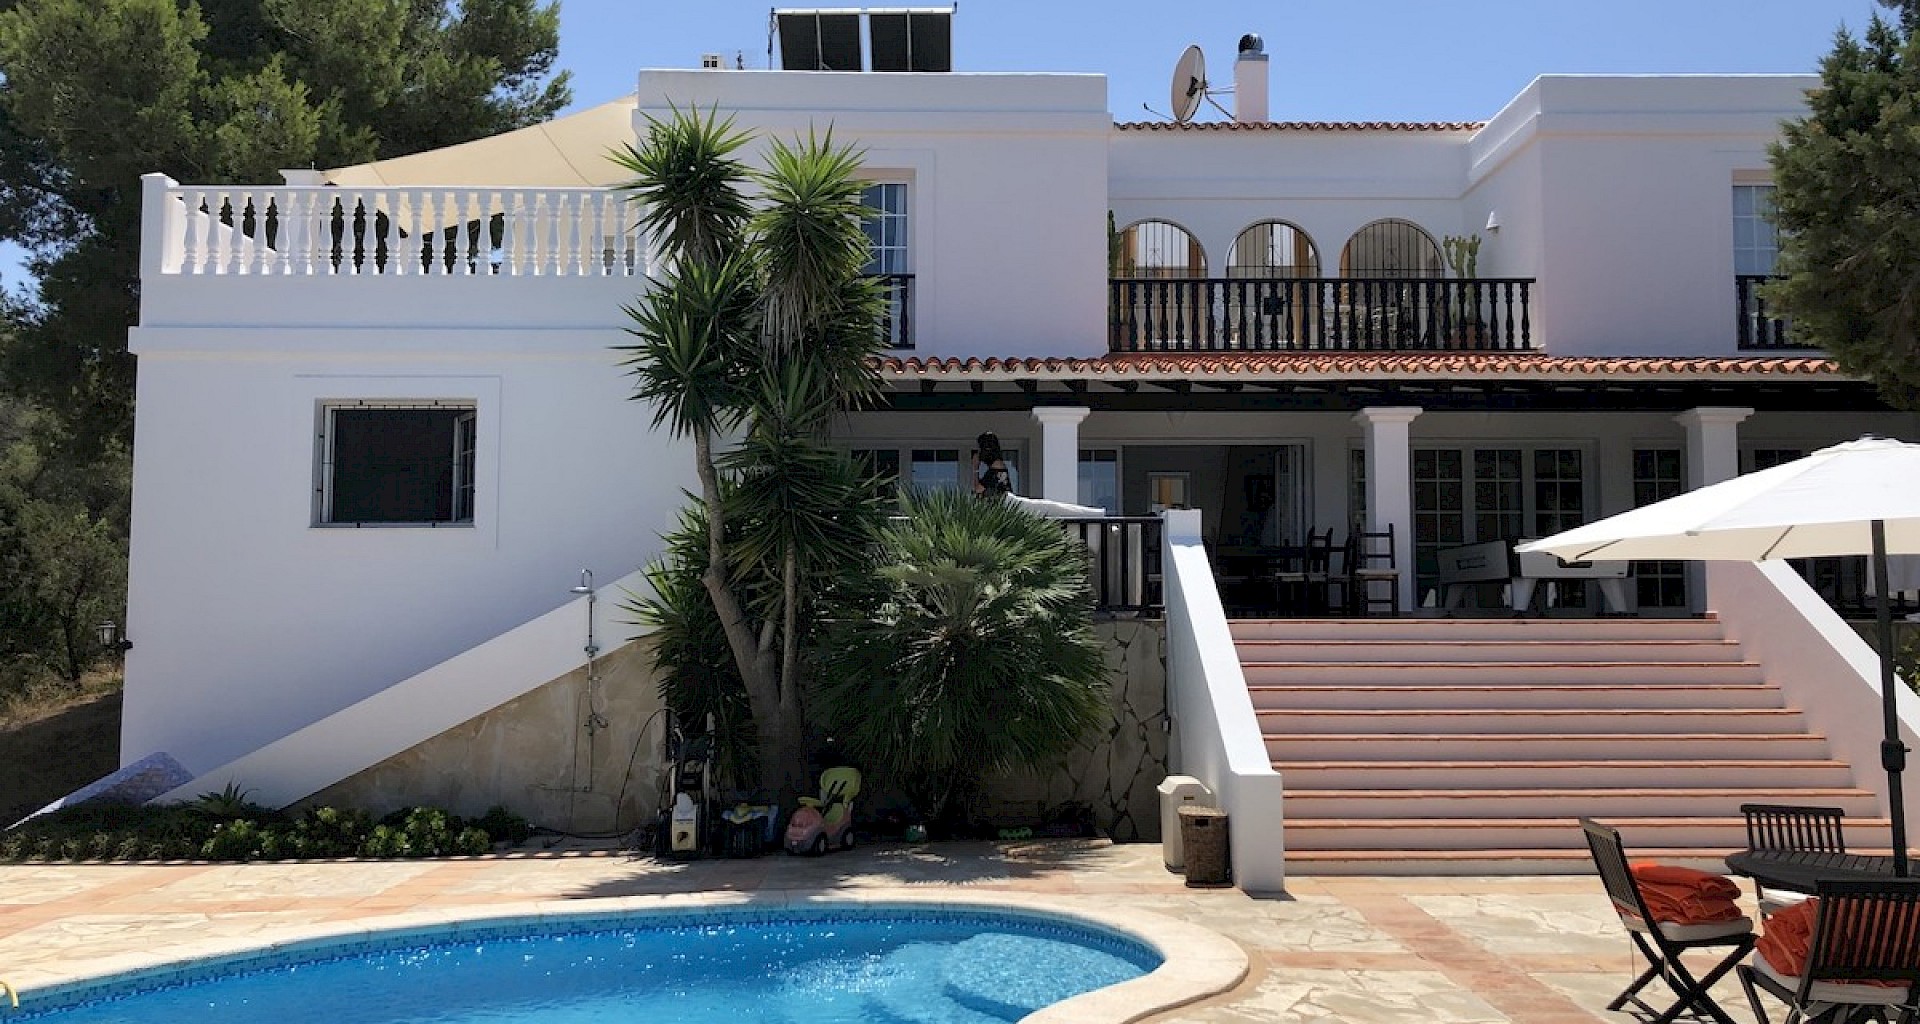 KROHN & LUEDEMANN Villa in Cala Bassa with holiday rental licence in Ibiza for sale Villa Cala Bassa Ibiza 001